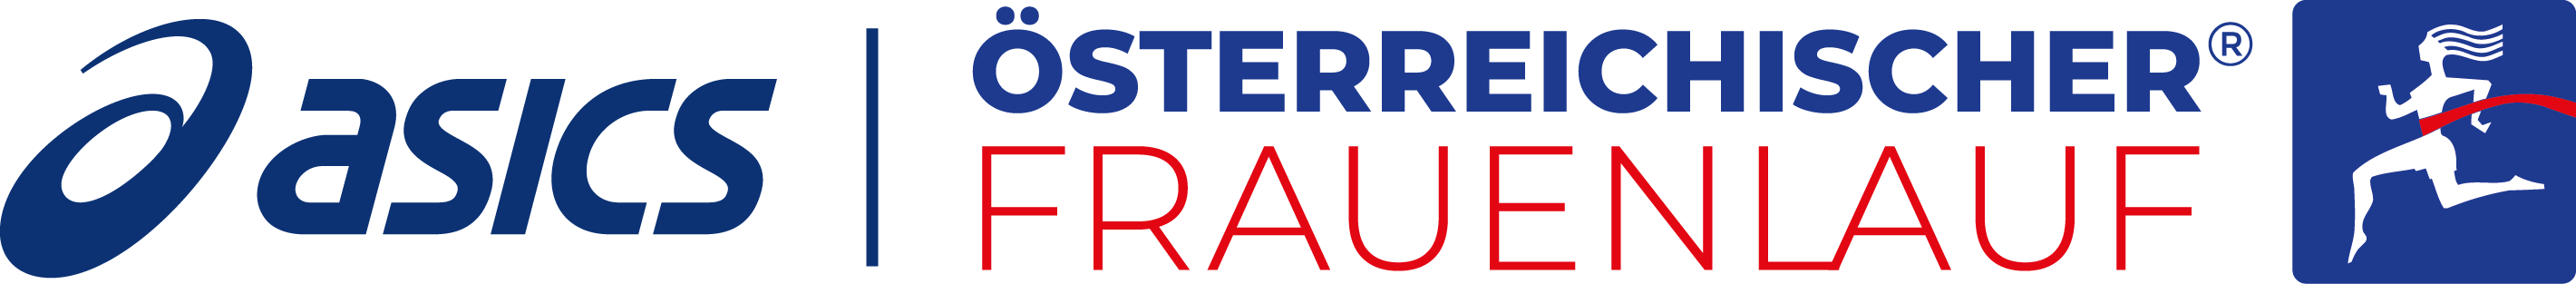 Logo des Österreichischen Frauenlaufes